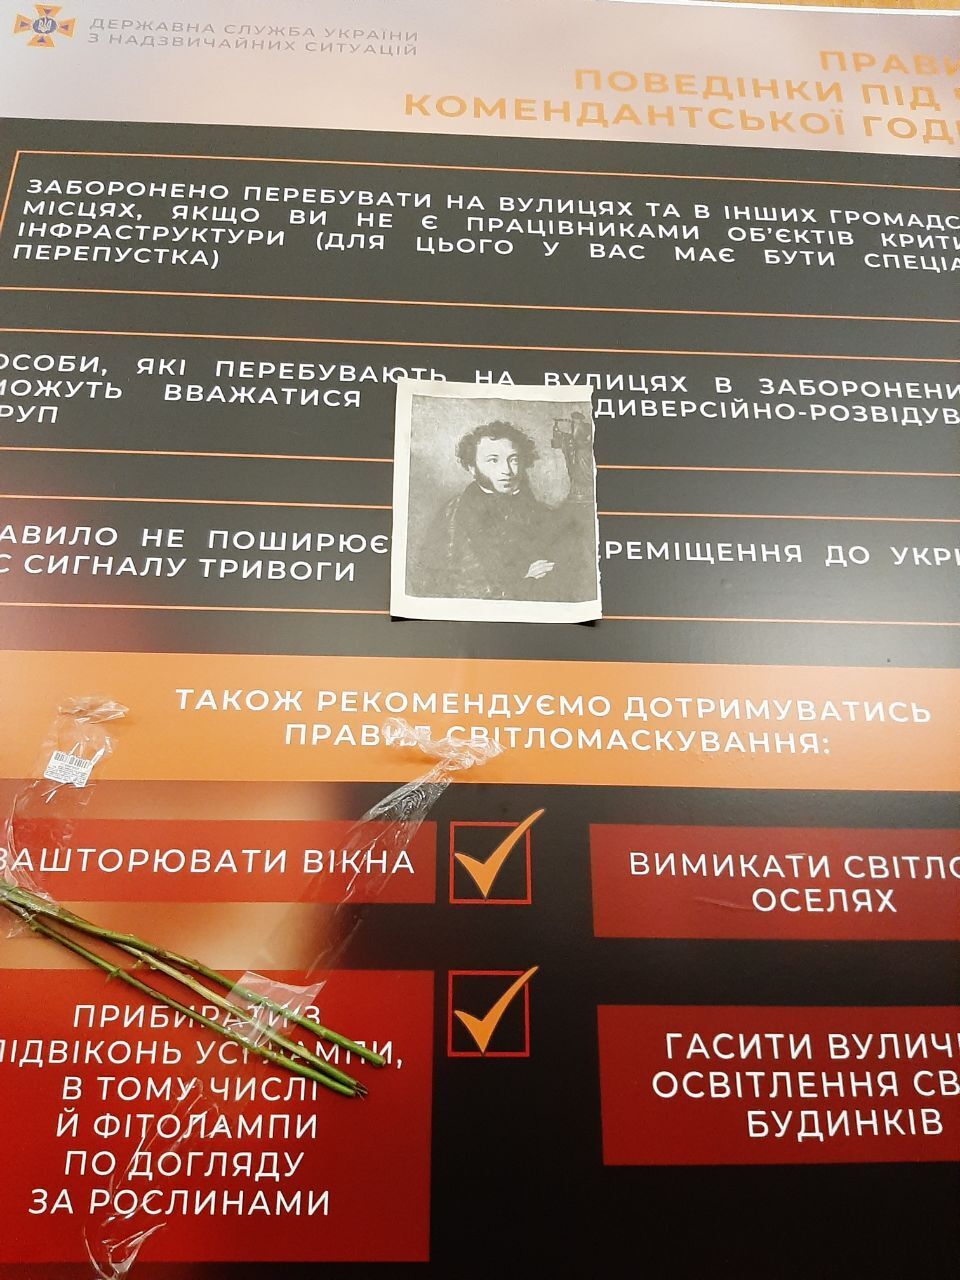 В Києві на станцію метро "Університет" принесли зображення Пушкіна і квіти на місце, до стояв його бюст. Ексклюзивні фото   